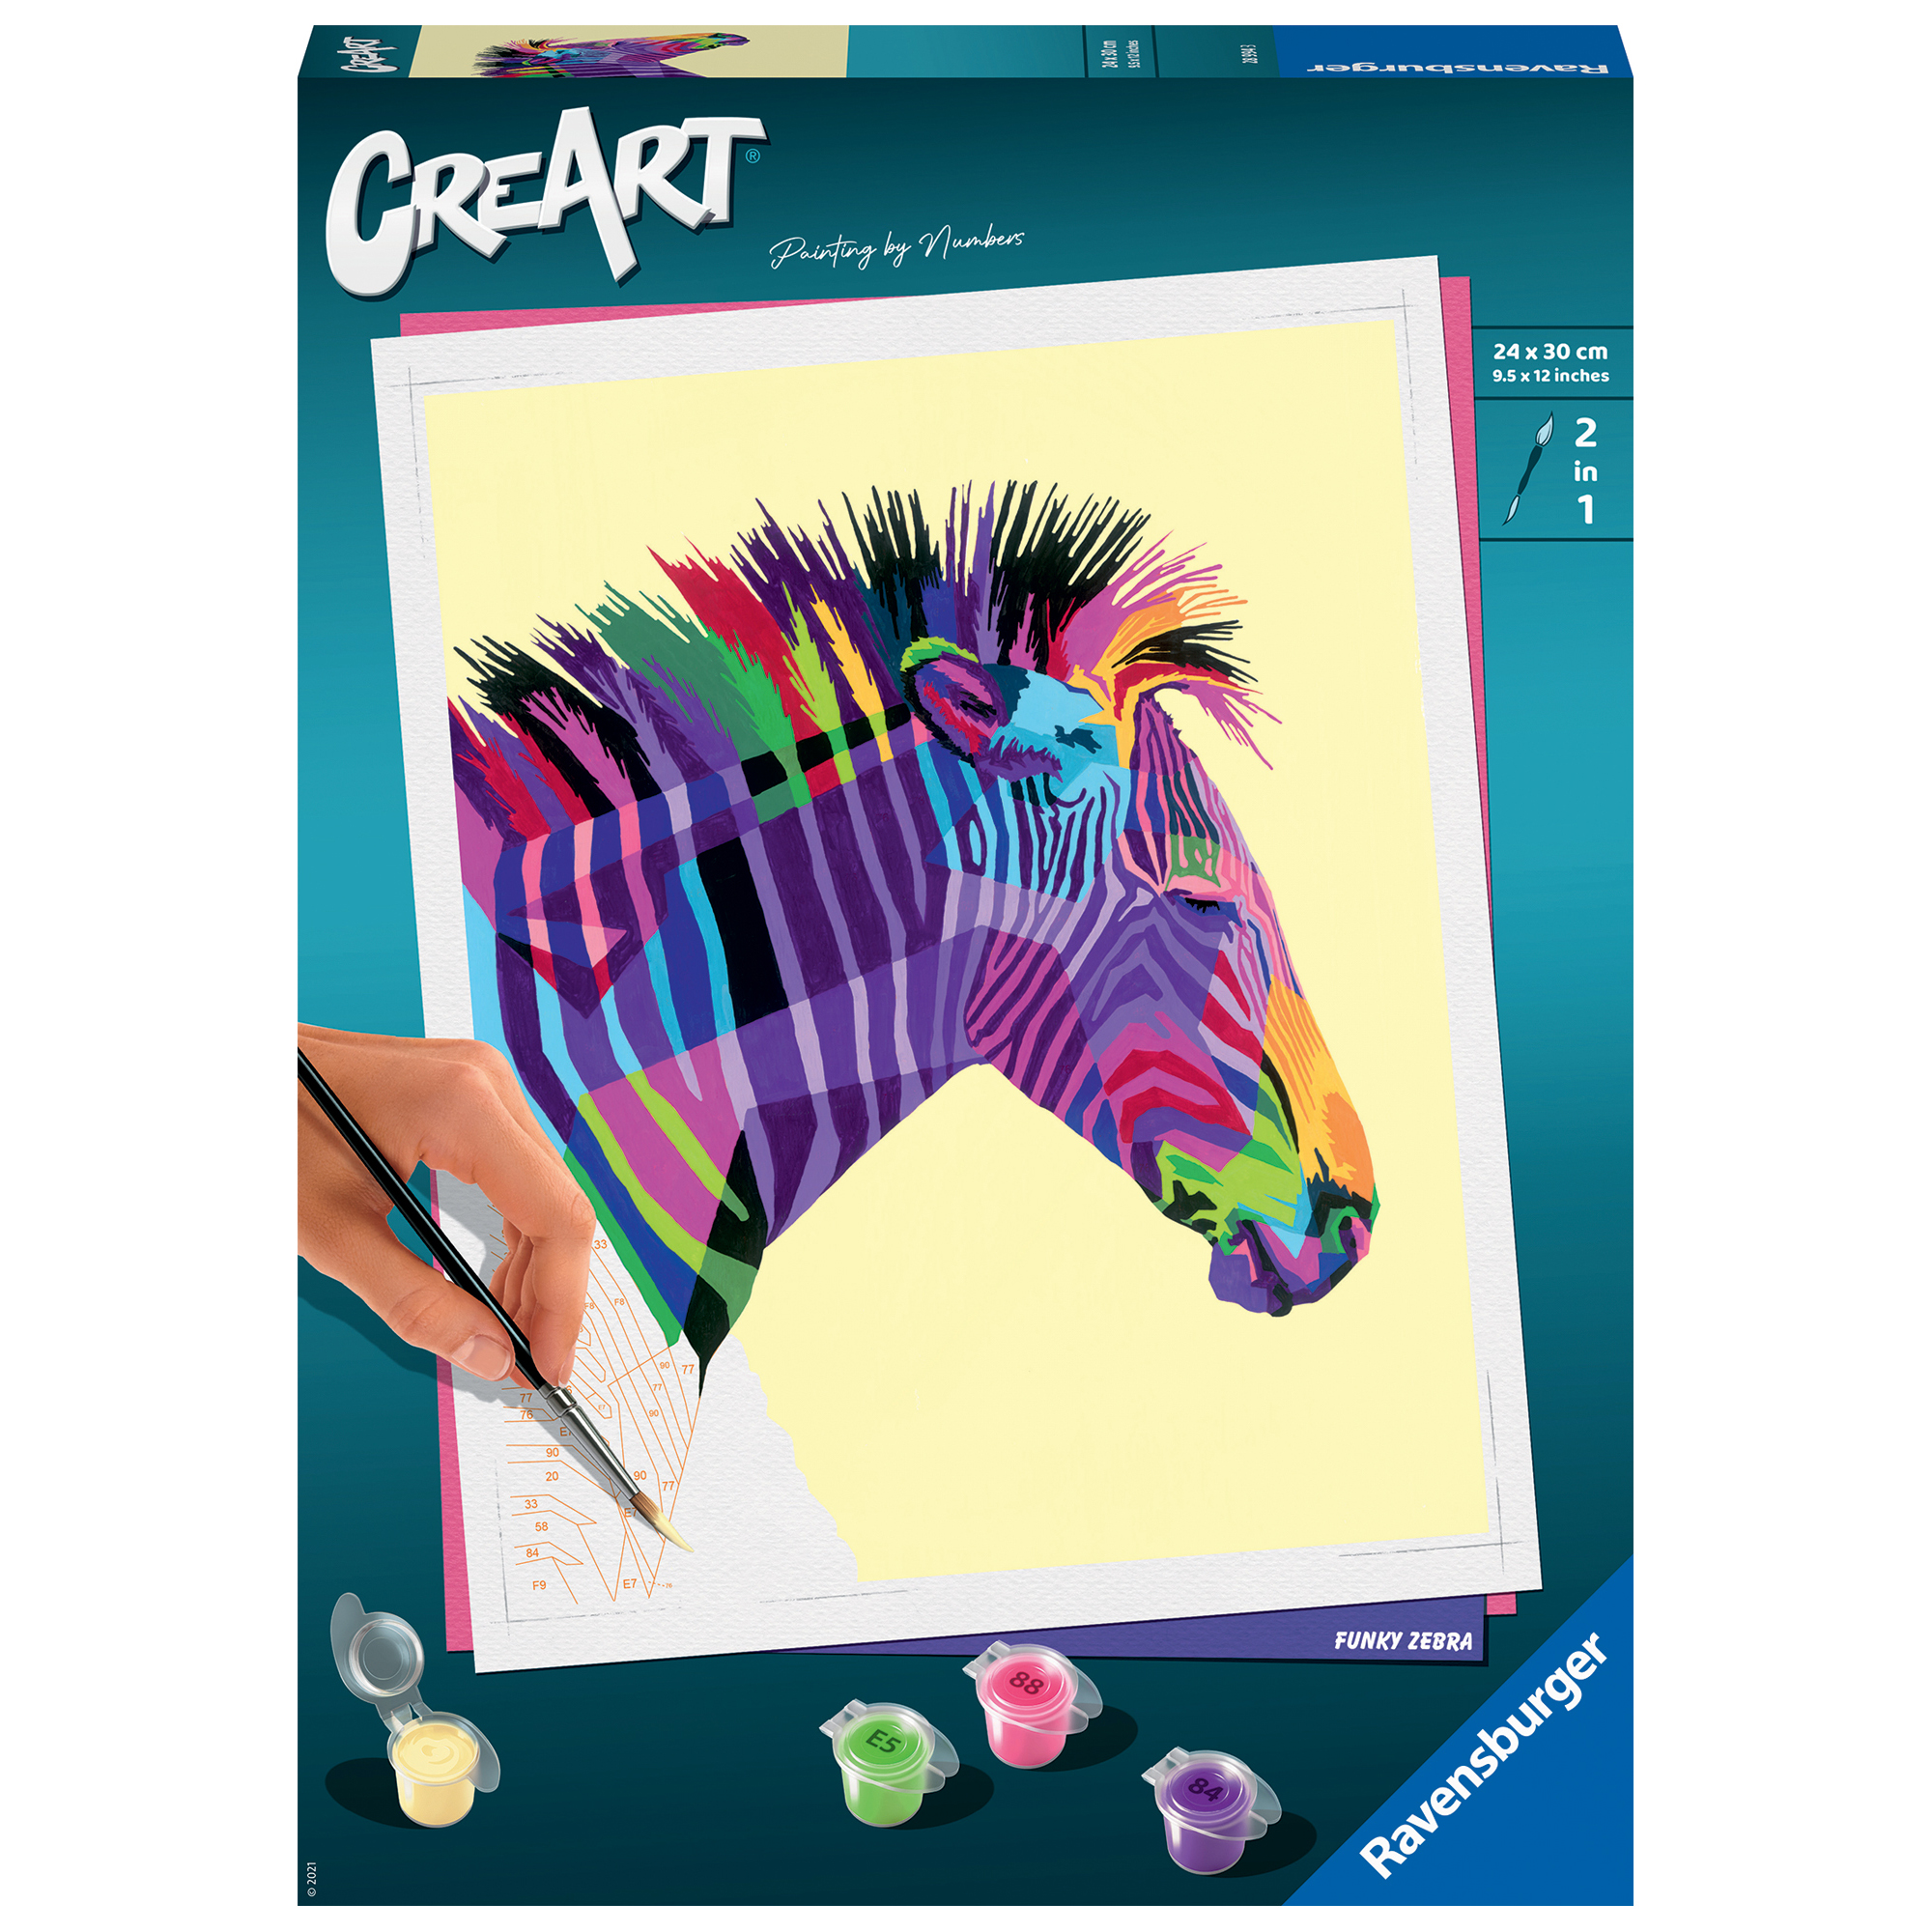 Creart Zebra, Serie Trend C, Kit per dipingere con i numeri - Creart